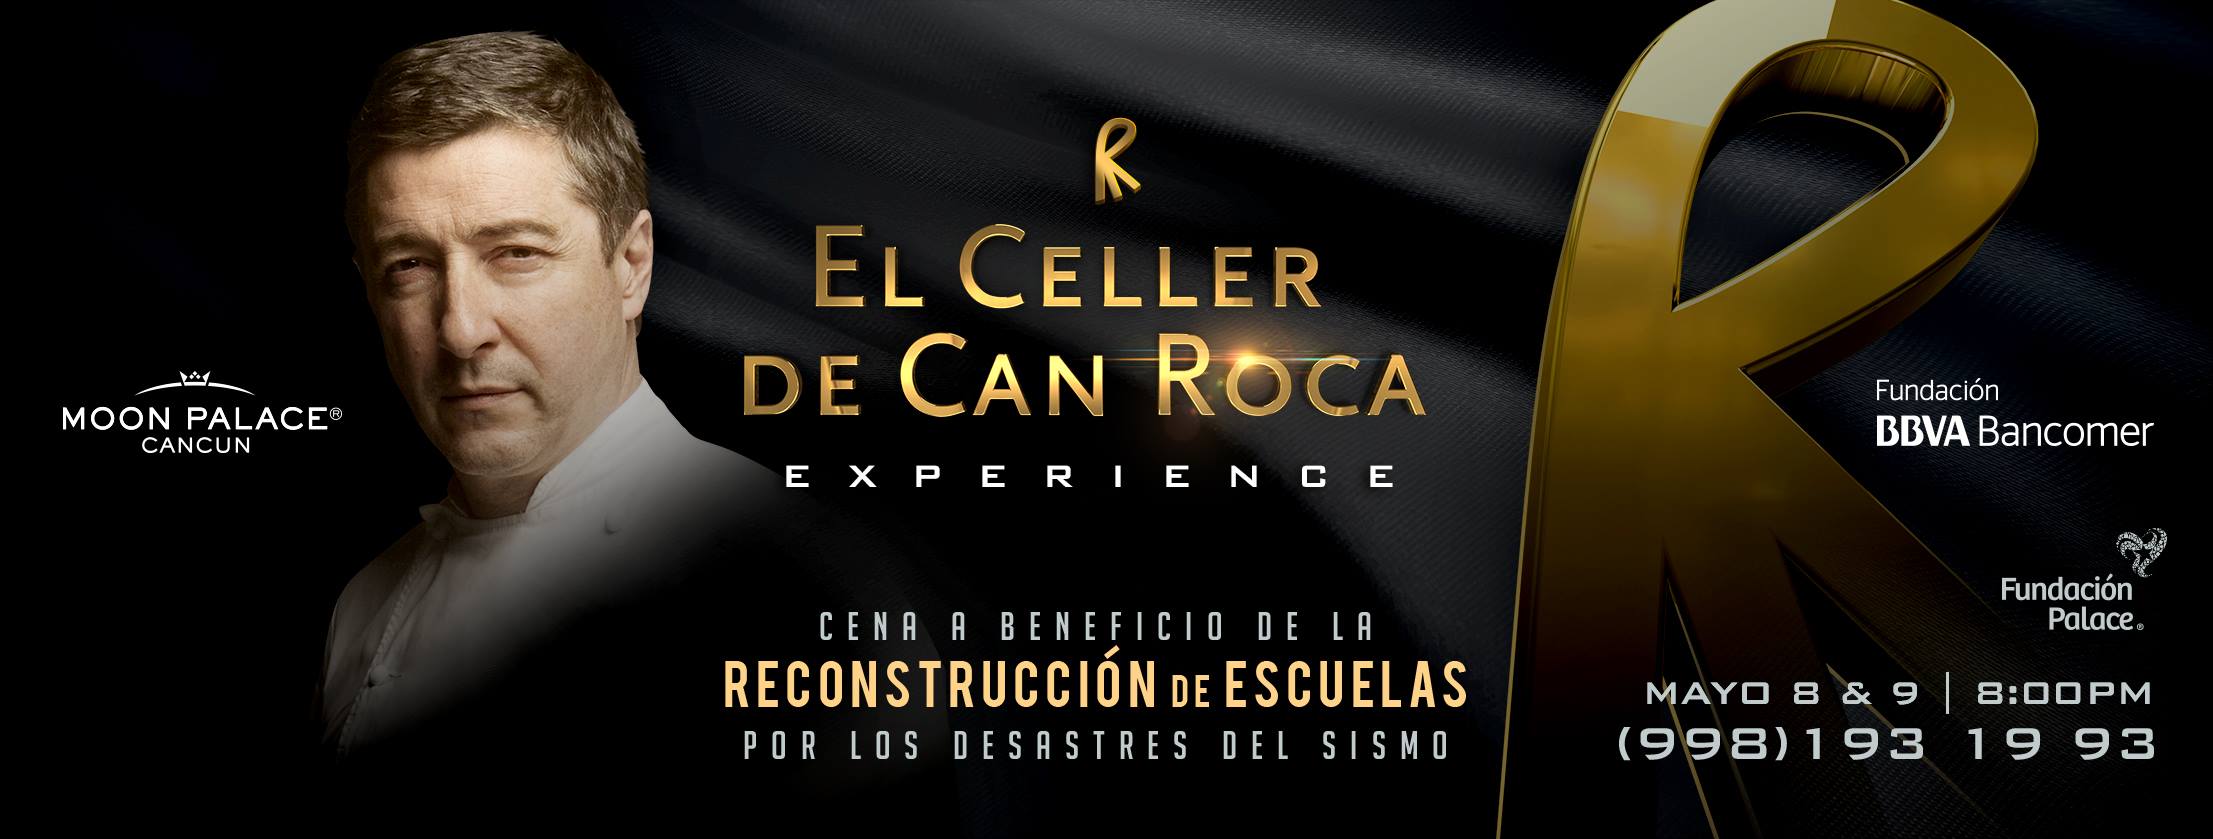 El Celler de Can Roca Experience, en colaboración con BBVA Bancomer, recaudará fondos para la reconstrucción de escuelas en México